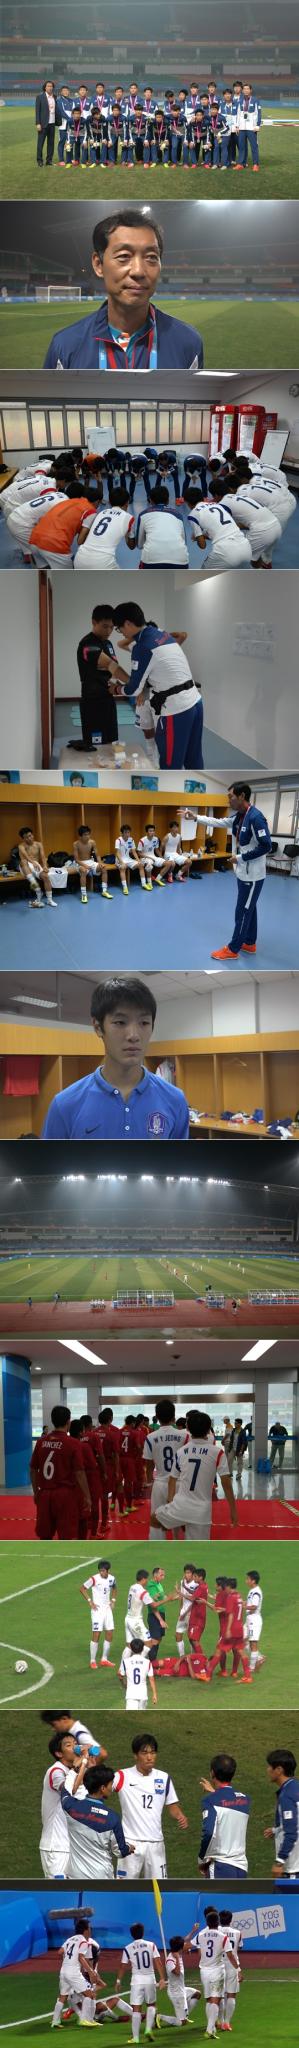 한국 15세 이하(U-15) 축구 대표팀이 난징청소년올림픽에서 준우승을 차지했다. /사진=대한축구협회 제공